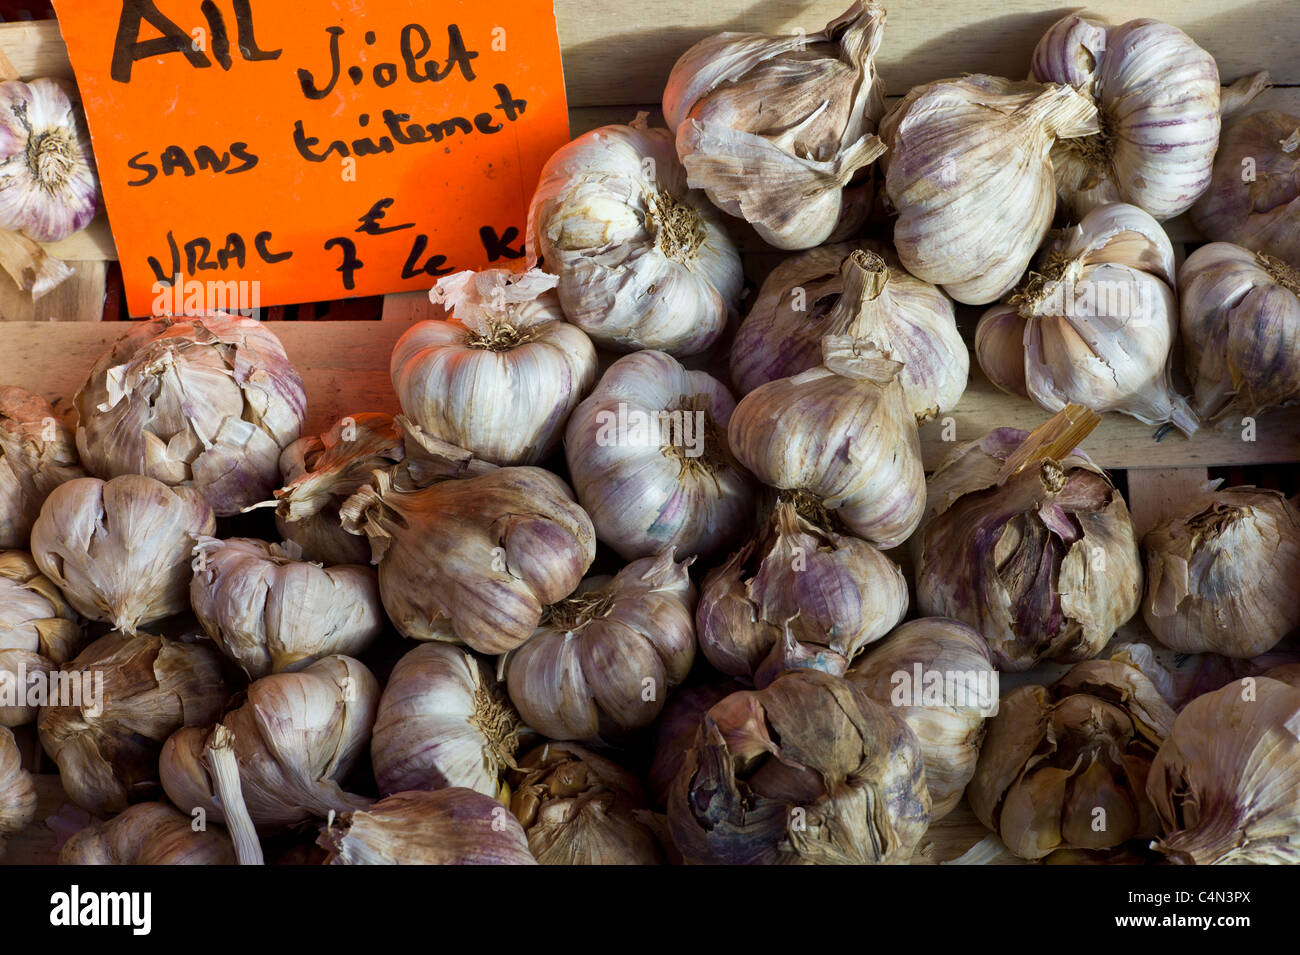 Aglio fresco violetta ail, Allium sativum, al mercato alimentare nella regione di Bordeaux in Francia Foto Stock